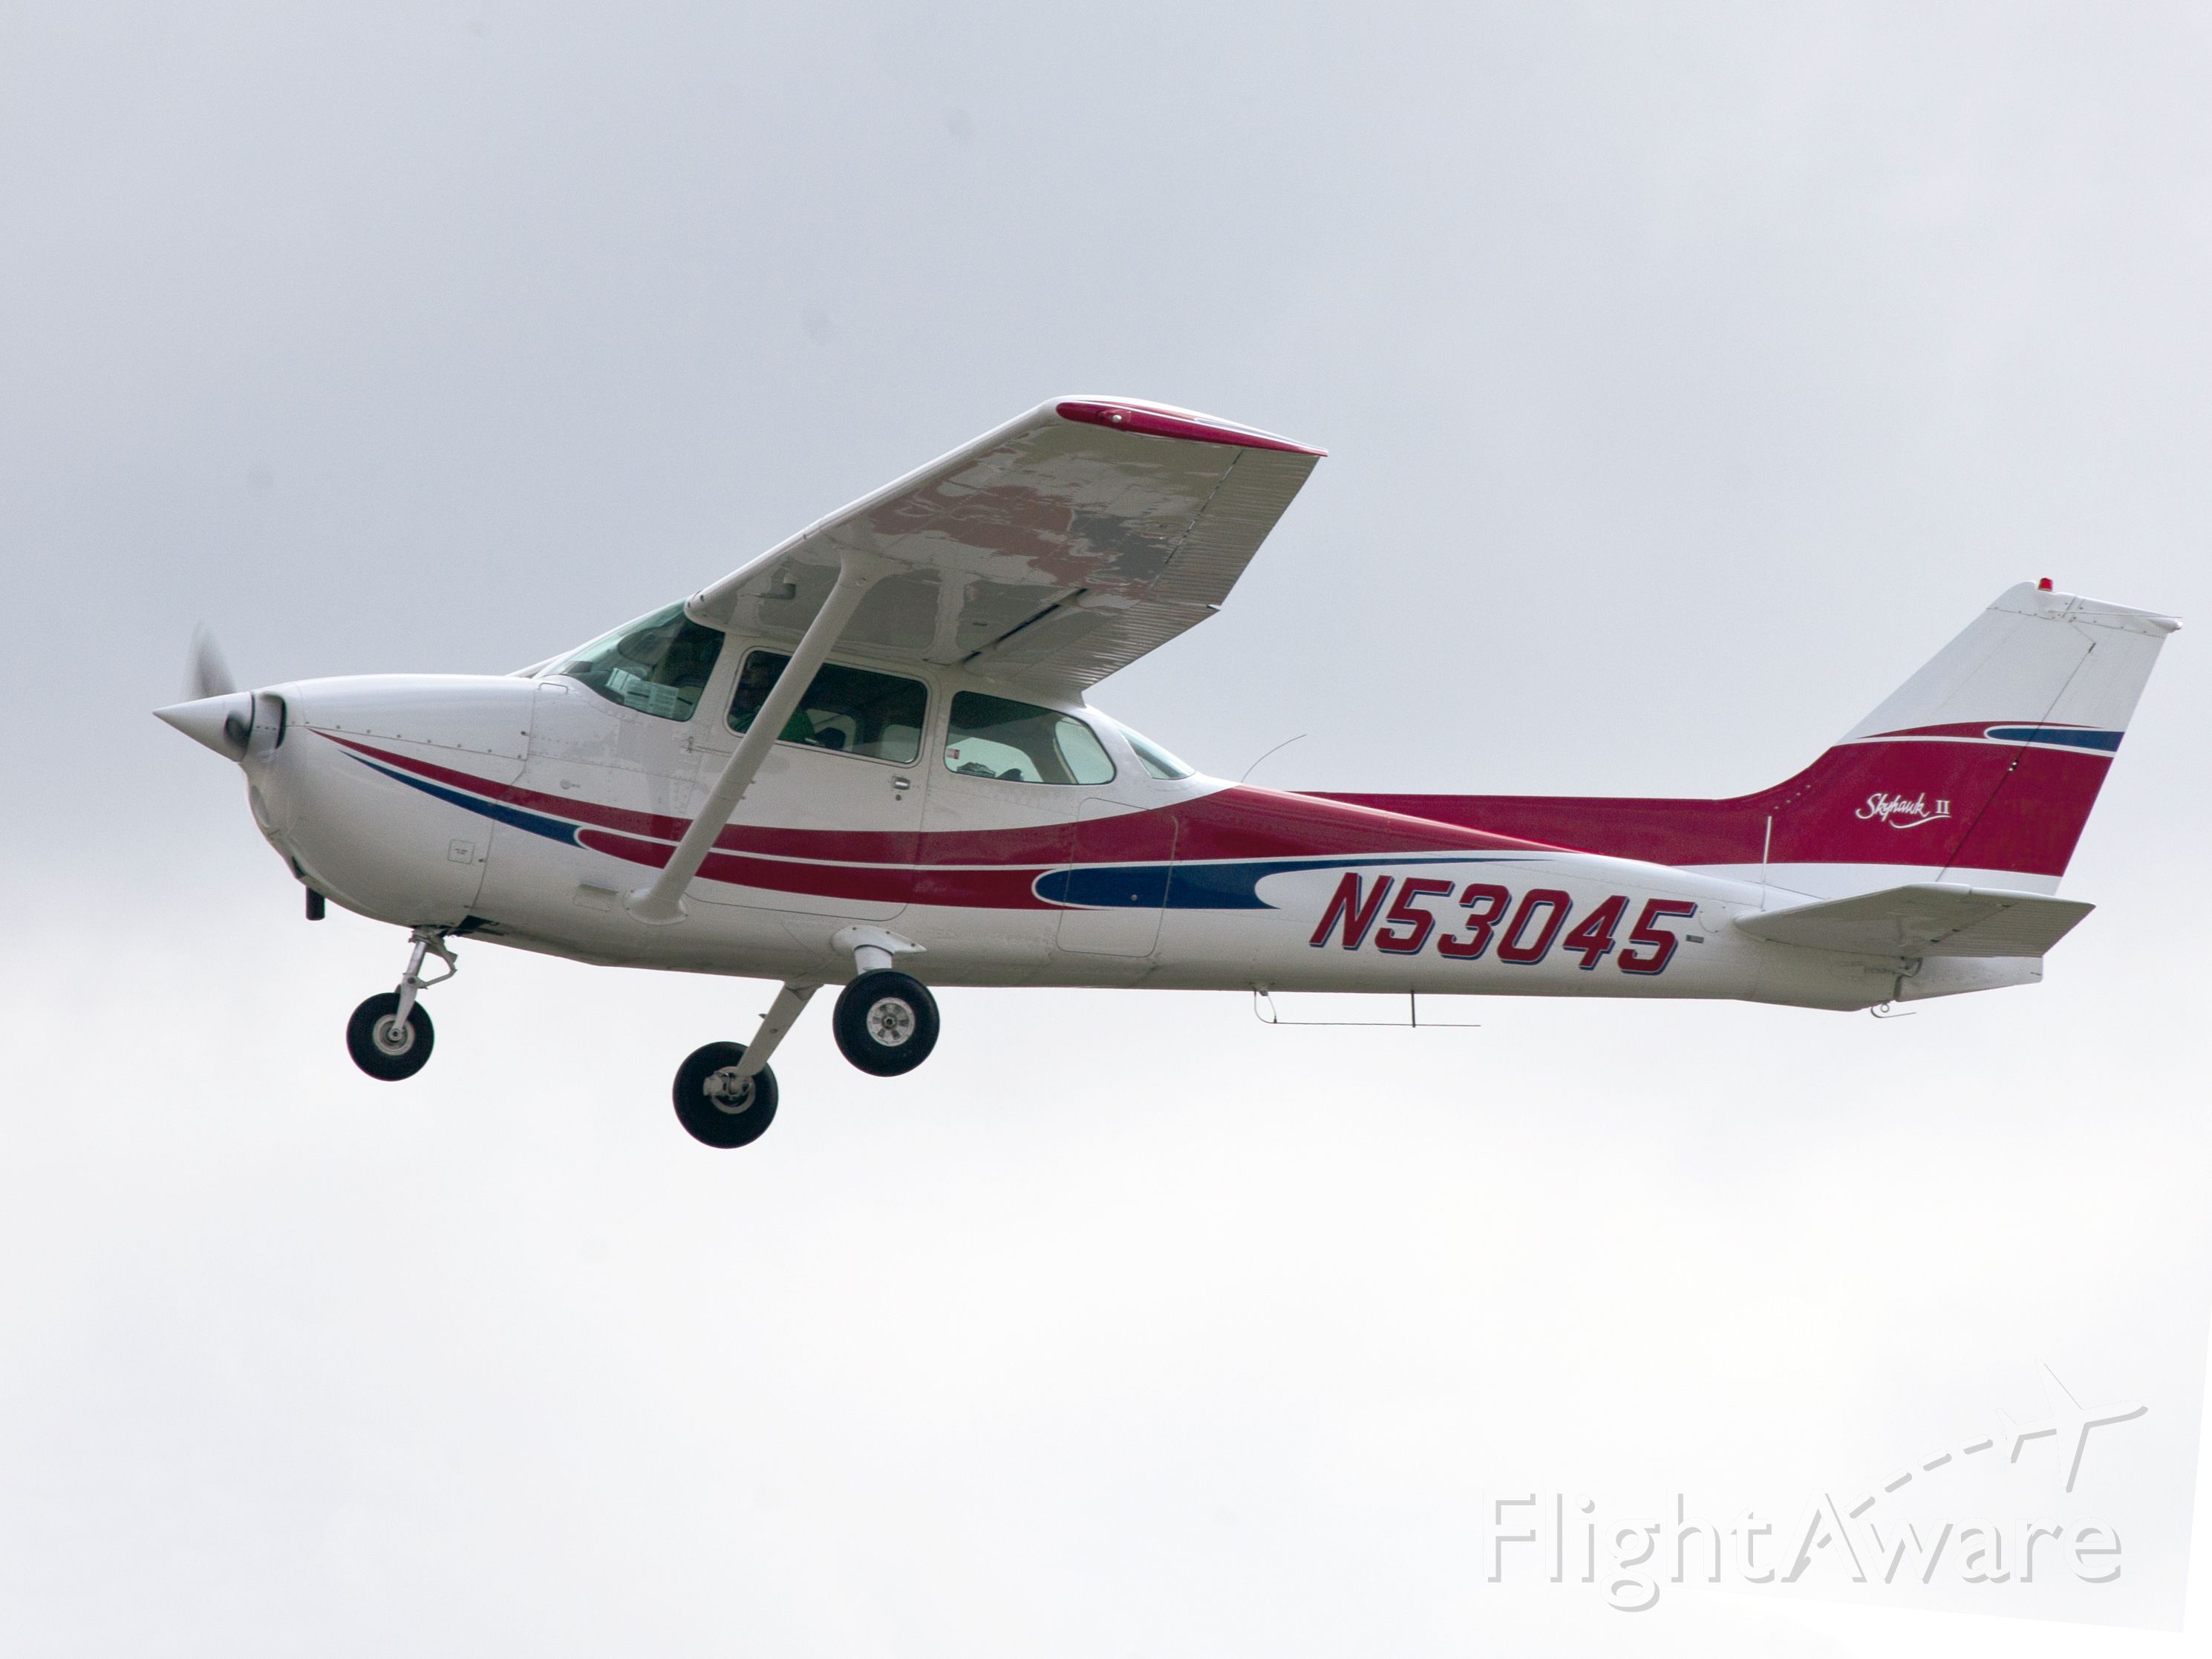 Cessna Cutlass RG (N53045) - Very nice paint scheme.